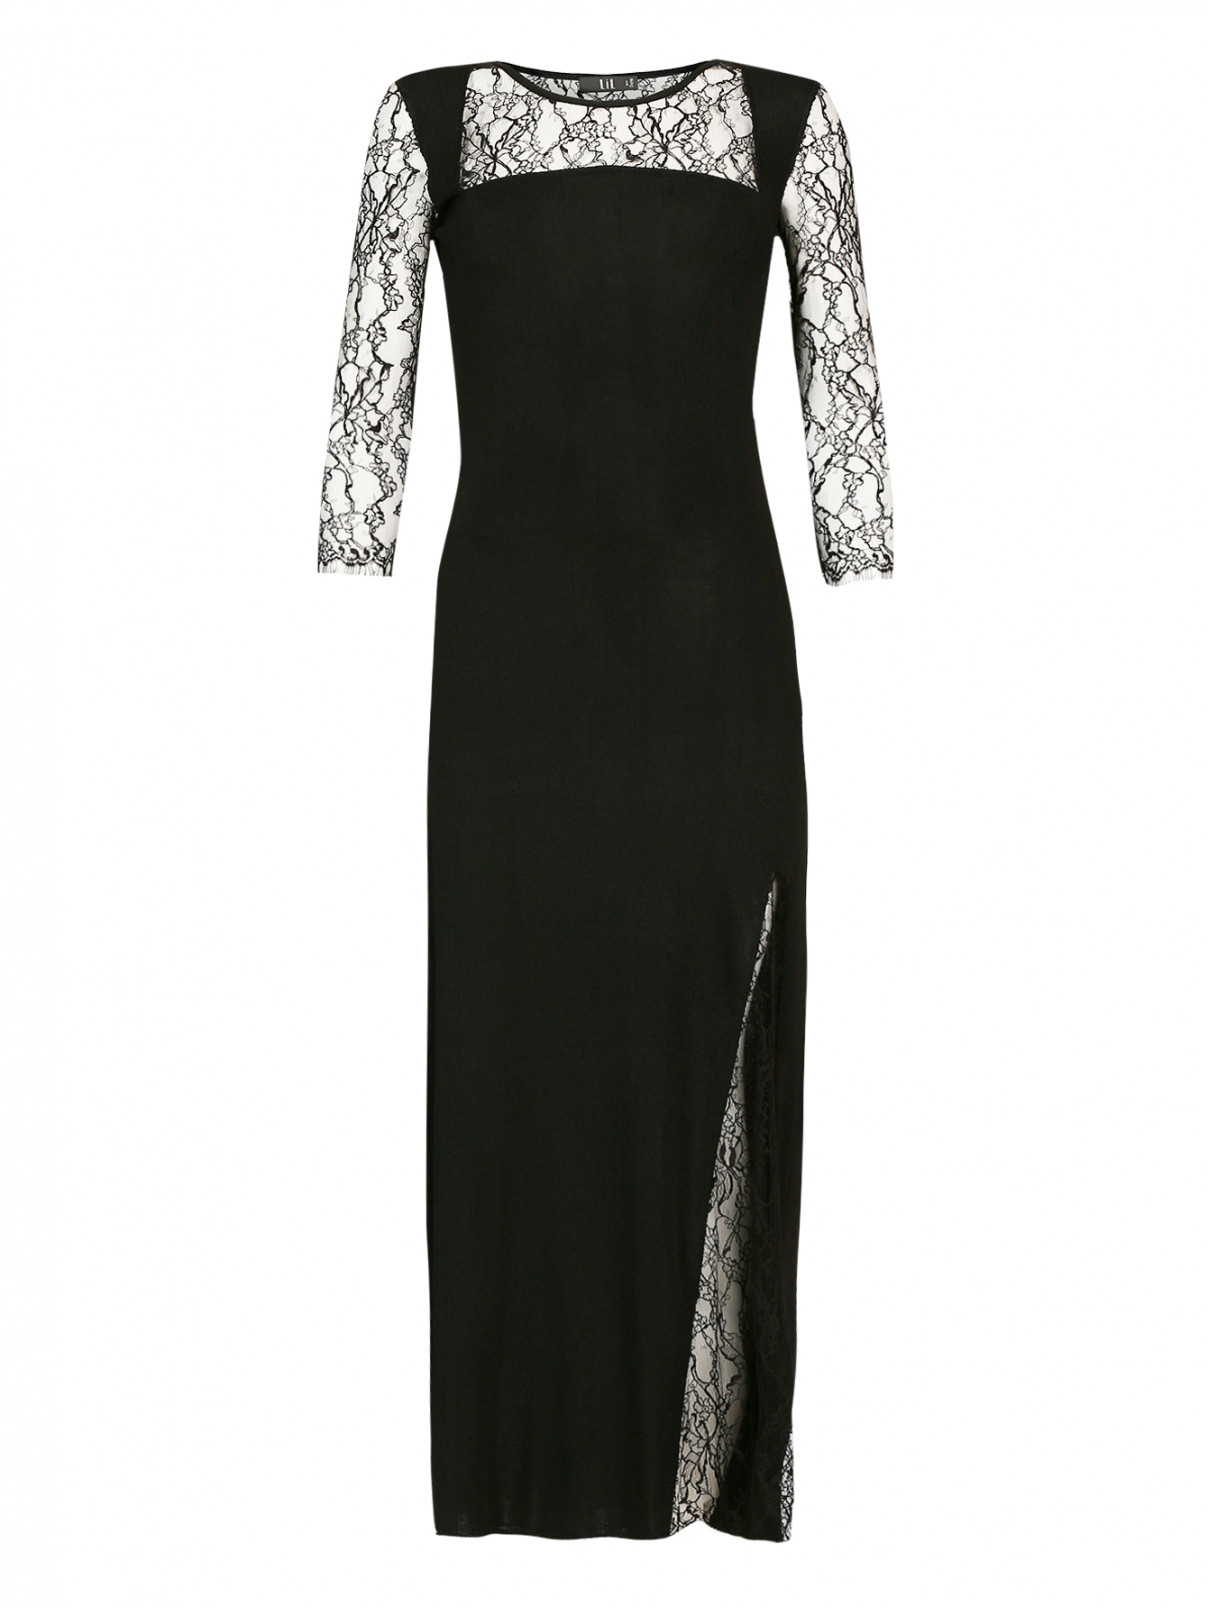 Трикотажное платье-макси с кружевными рукавами 3/4 Lil pour l'Autre  –  Общий вид  – Цвет:  Черный